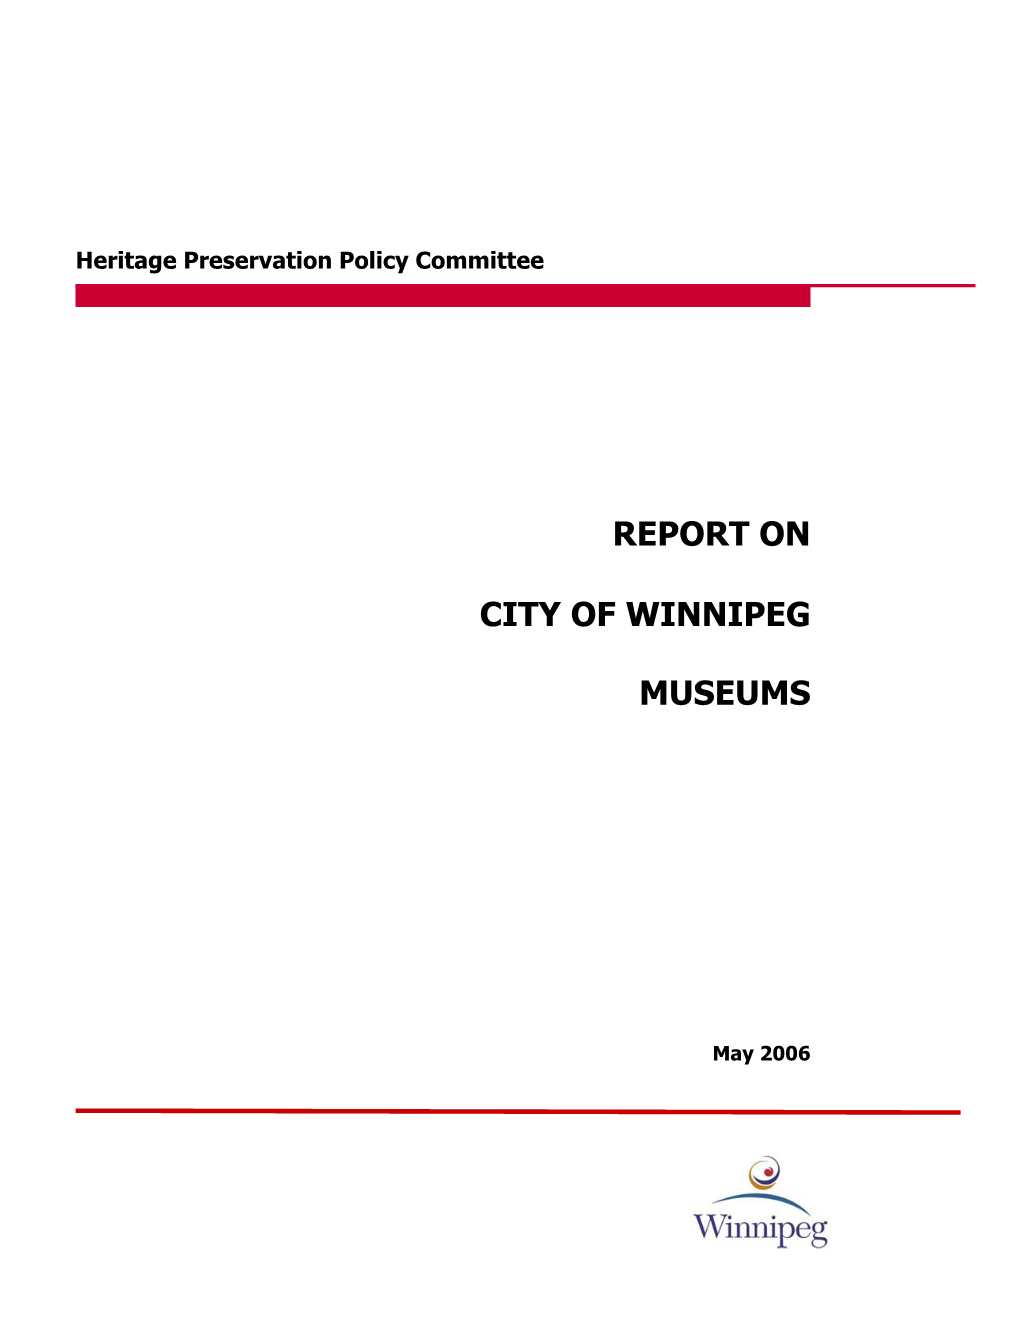 Report on City of Winnipeg Museums